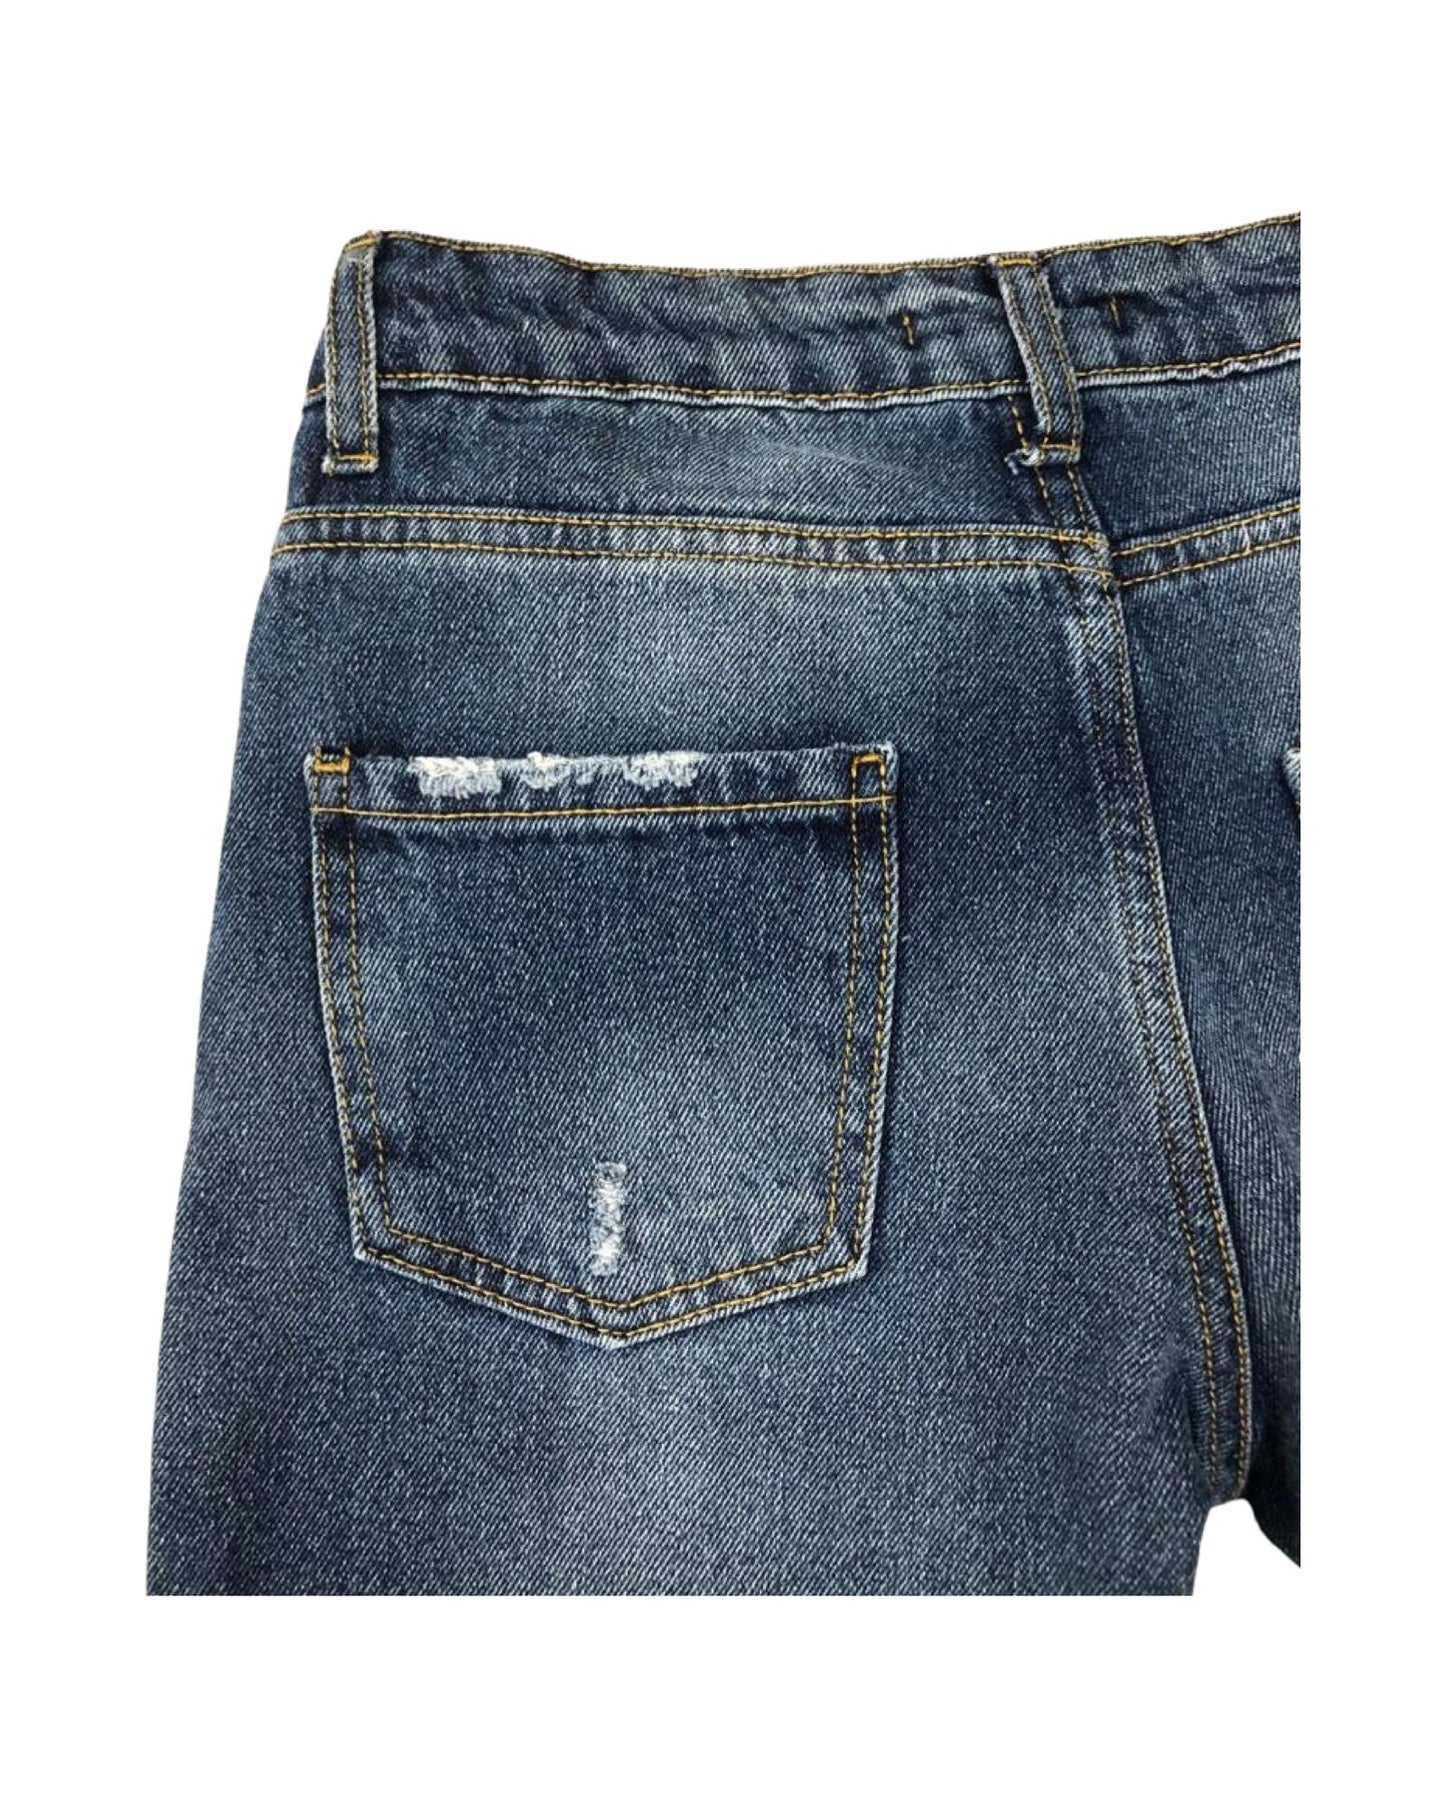 jeans , Jeans baggy strappati con ponpon  per Ragazza da 8anni a 16anni Paris Hilton PHJDT4314 - BabyBimbo 0-16, abbigliamento bambini